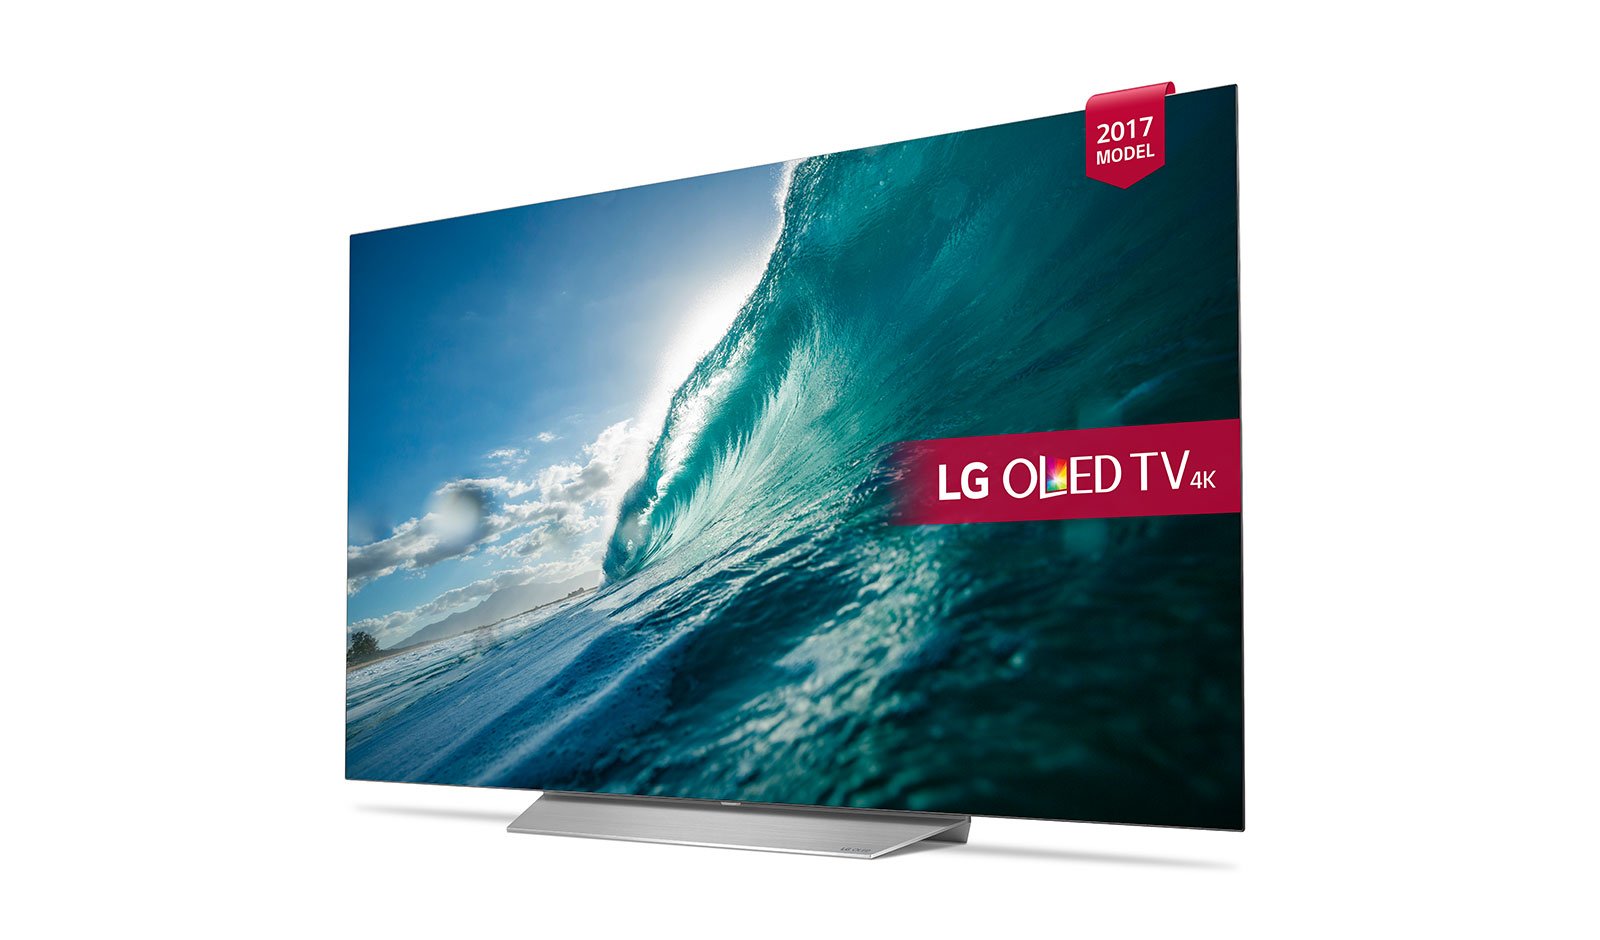 55 телевизор haier s9 ultra. Телевизор LG oled55b7v. LG oled55c7v 2017 OLED, HDR. LGLG oled55b7v. LG 65 OLED 2017.